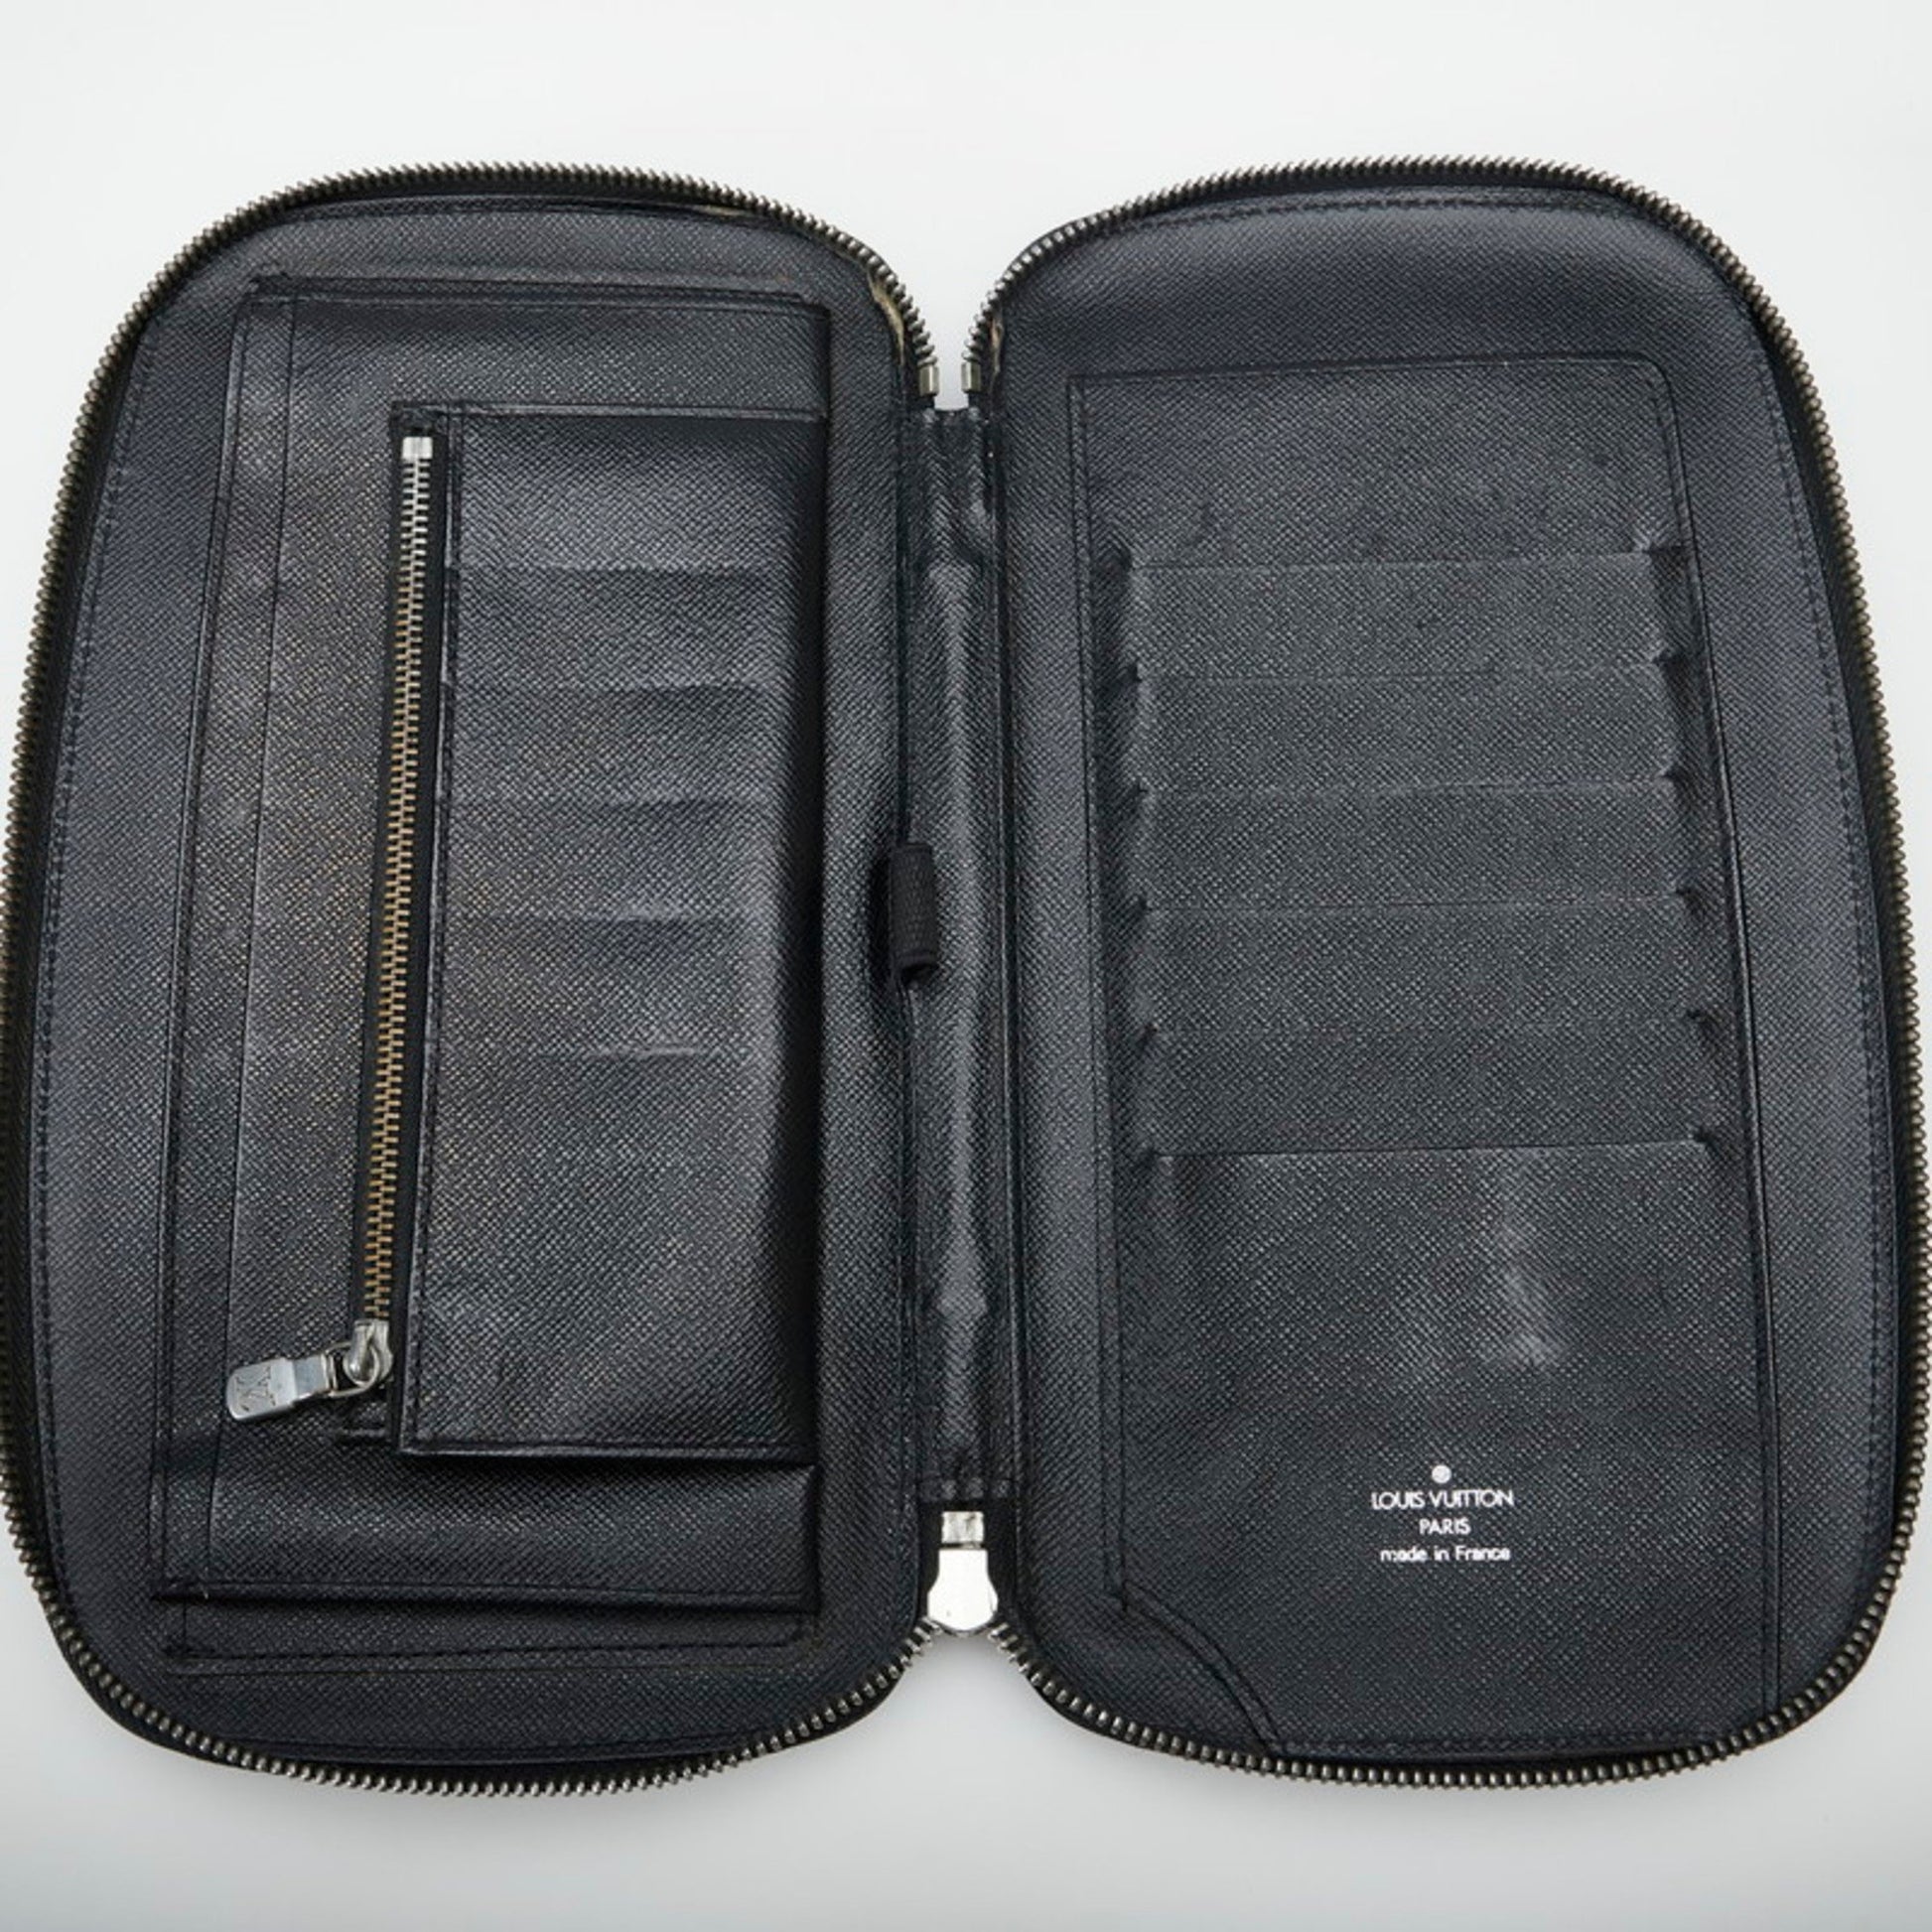 LOUIS VUITTON Clutch bag M30652 Organizer Atoll Travel case Taiga